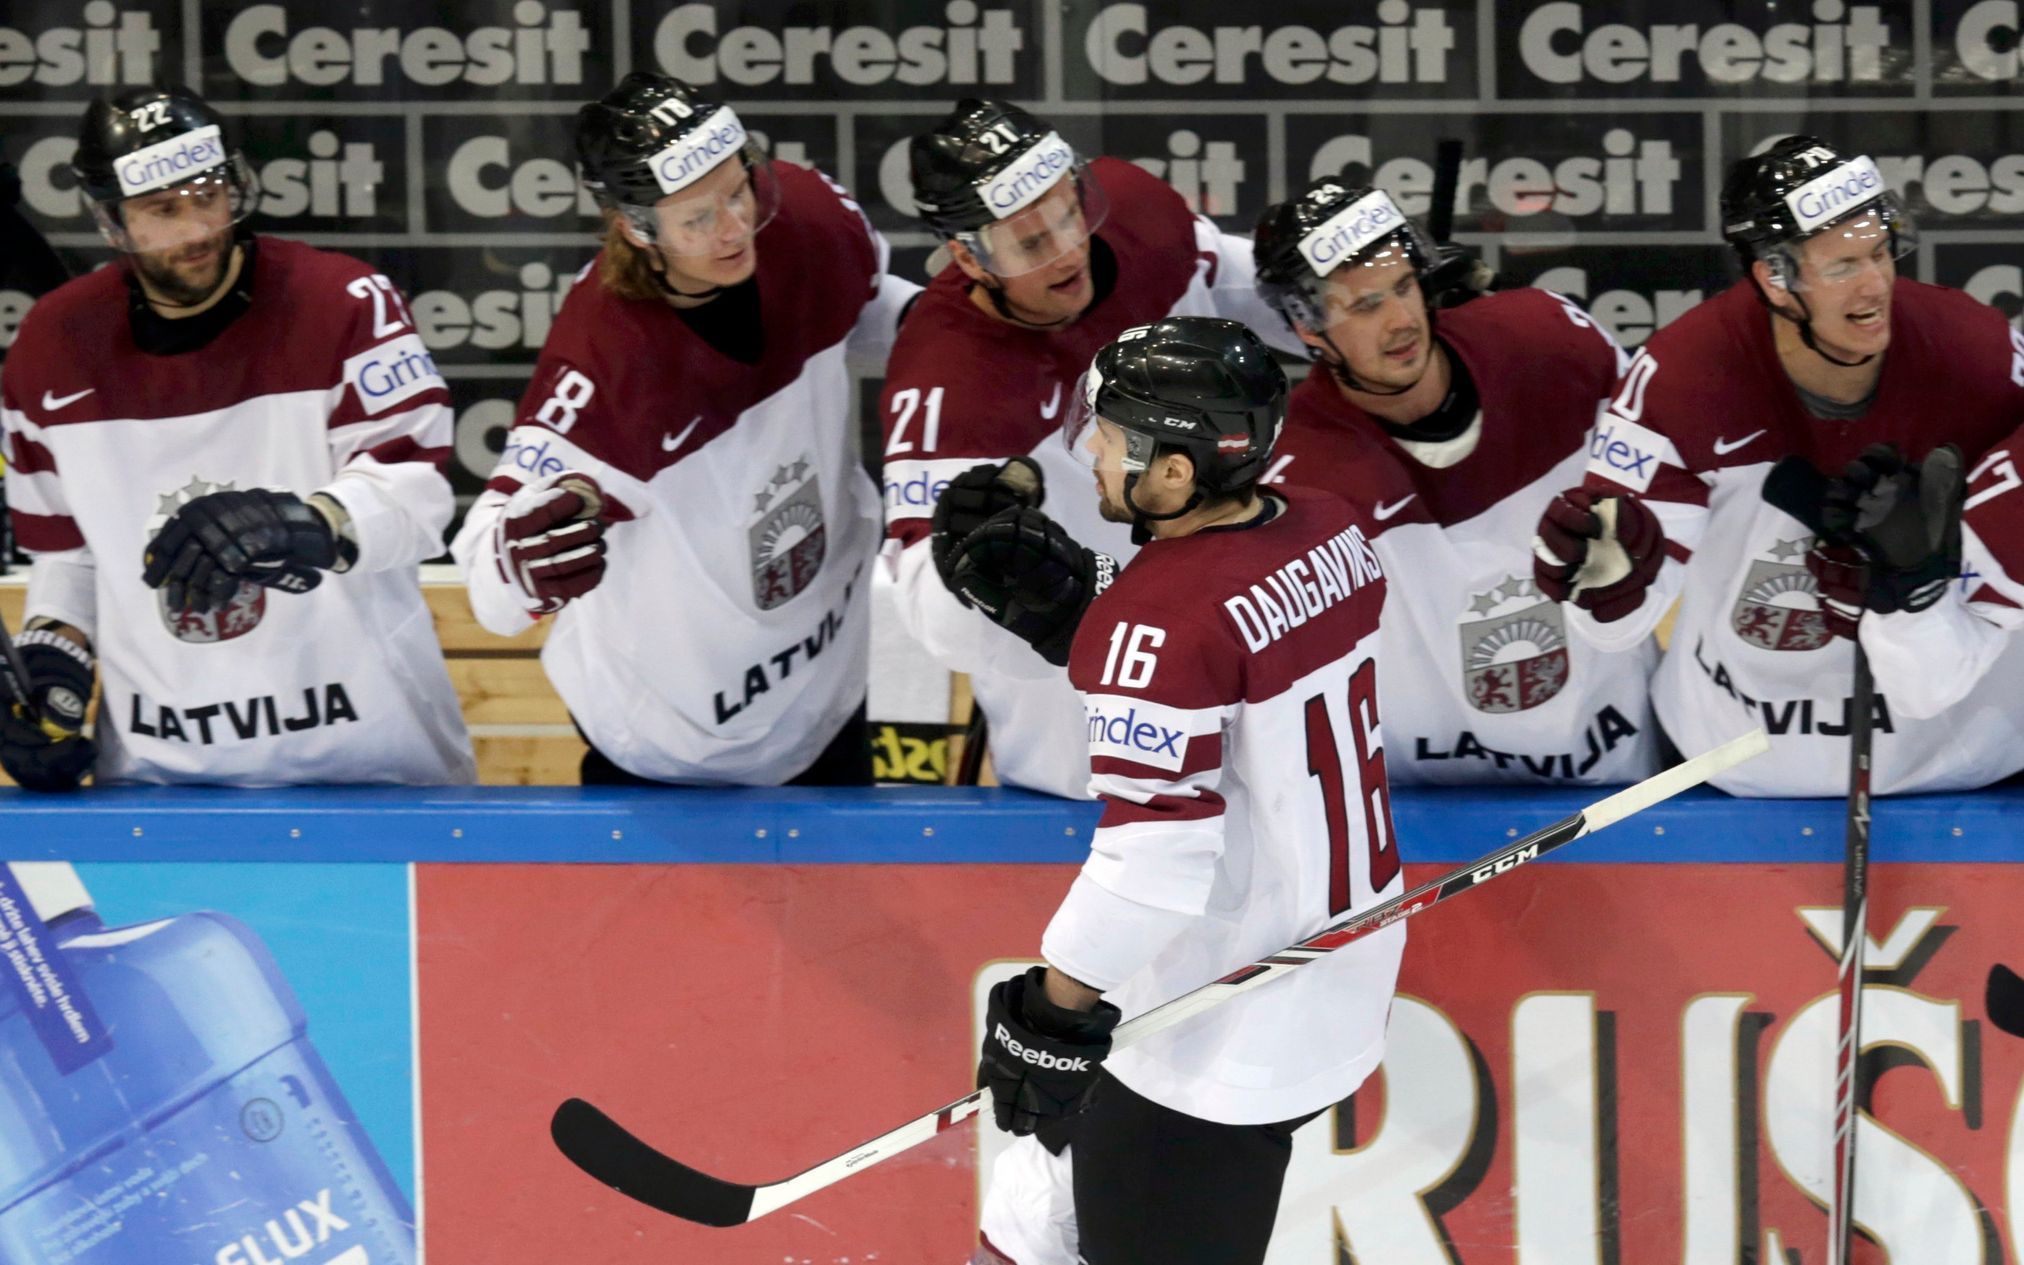 Hokej, MS 2015, Lotyšsko-Francie: Kaspars Daugavinš